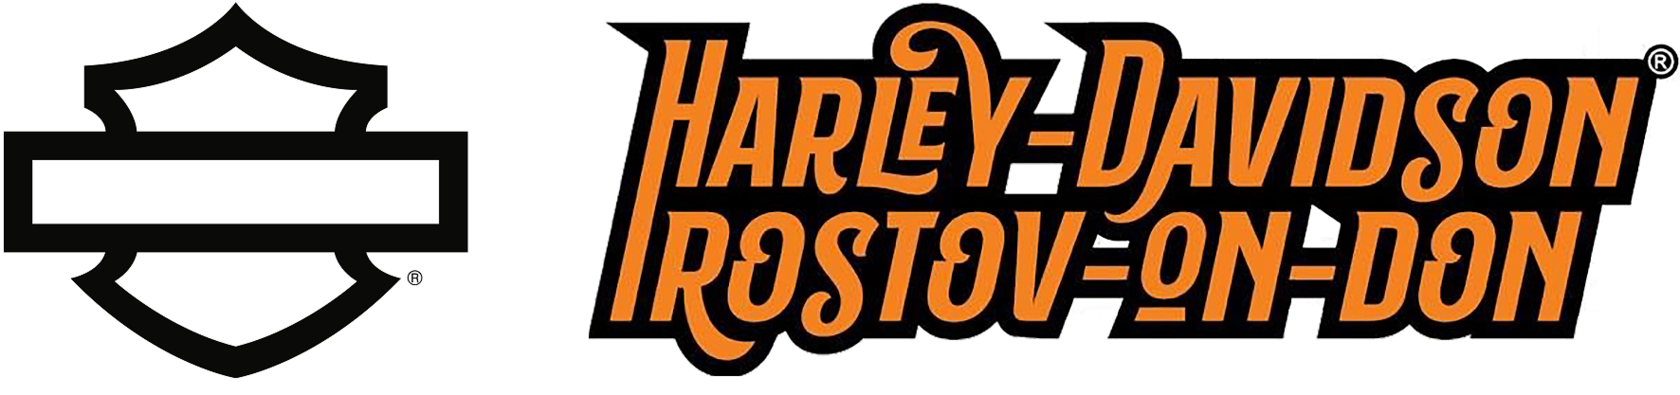 Harley-davidson Rostov